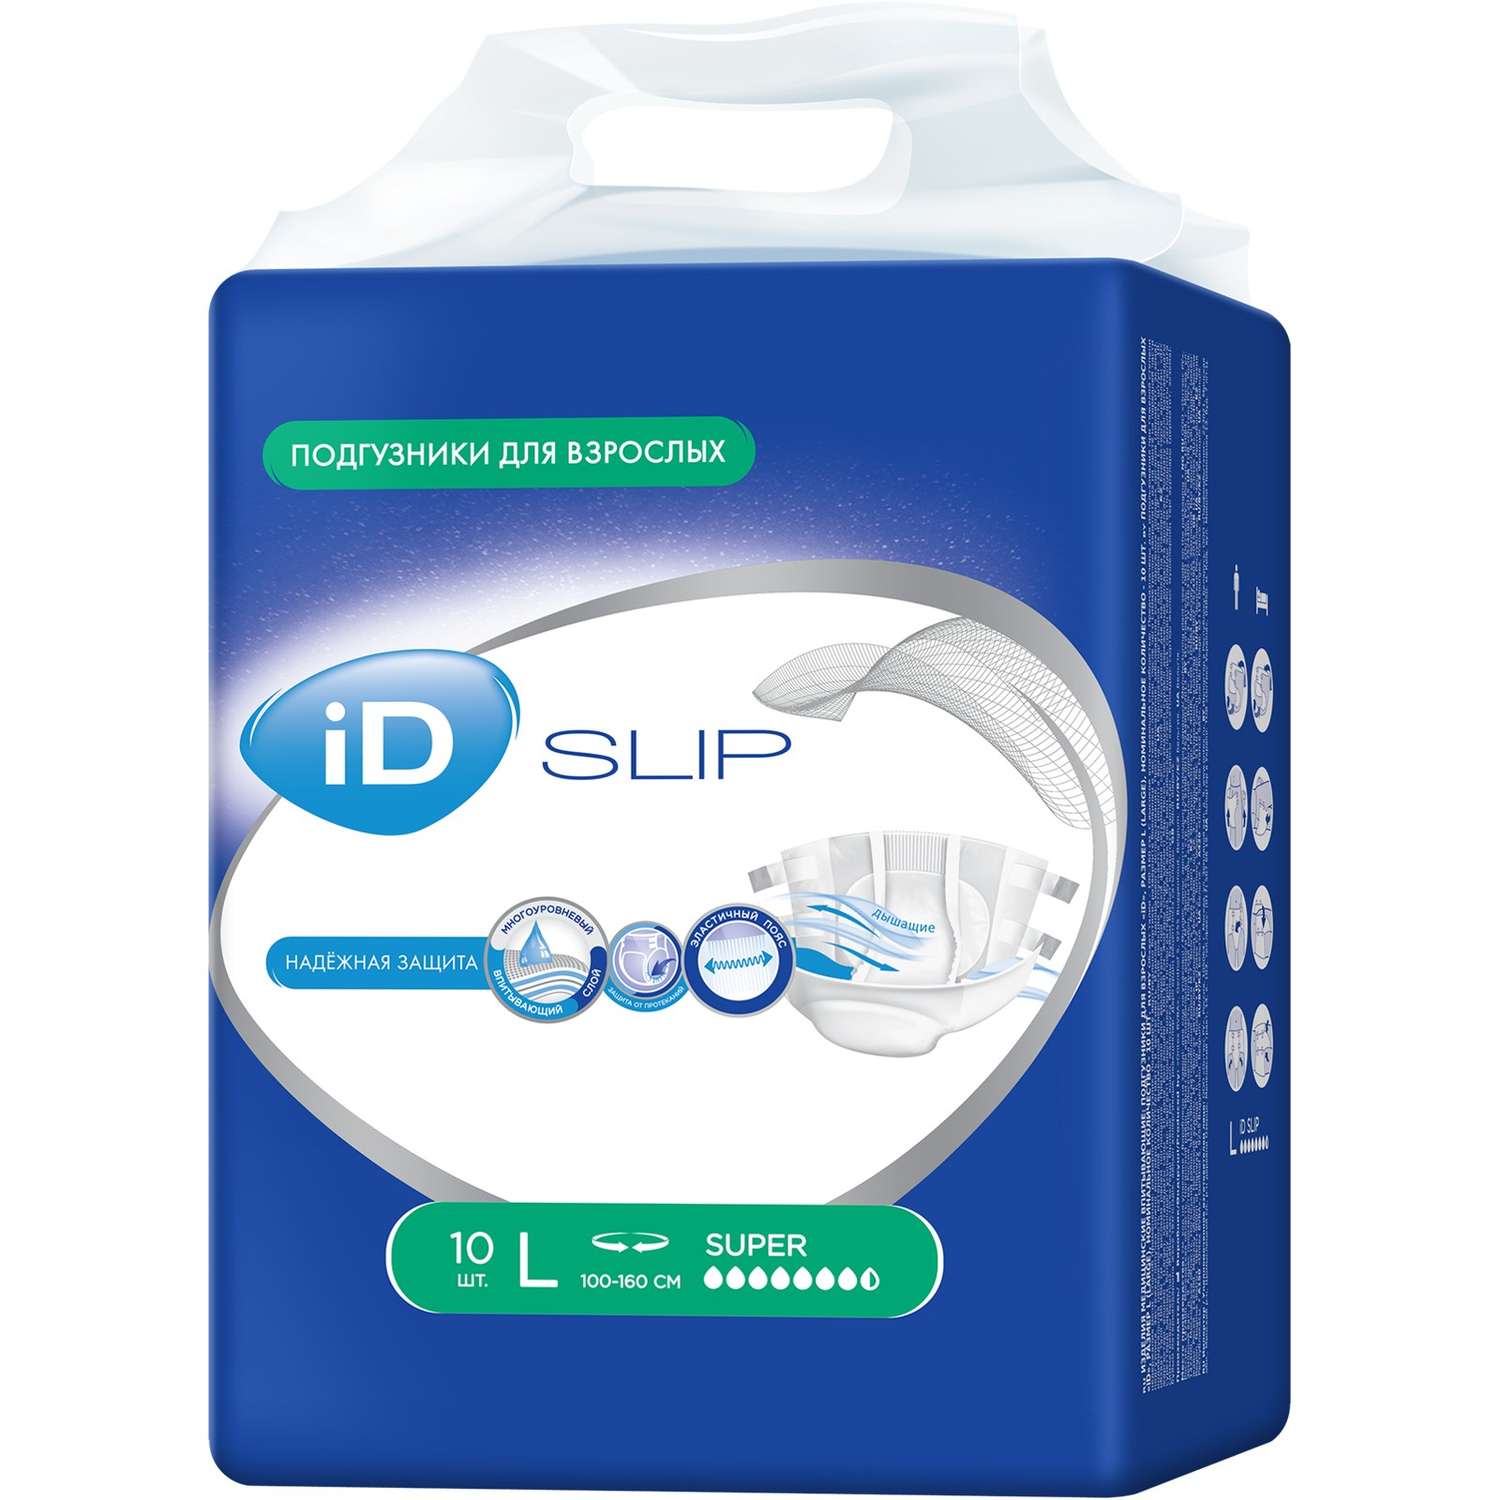 Подгузники для взрослых iD SLIP L 10 шт. - фото 2